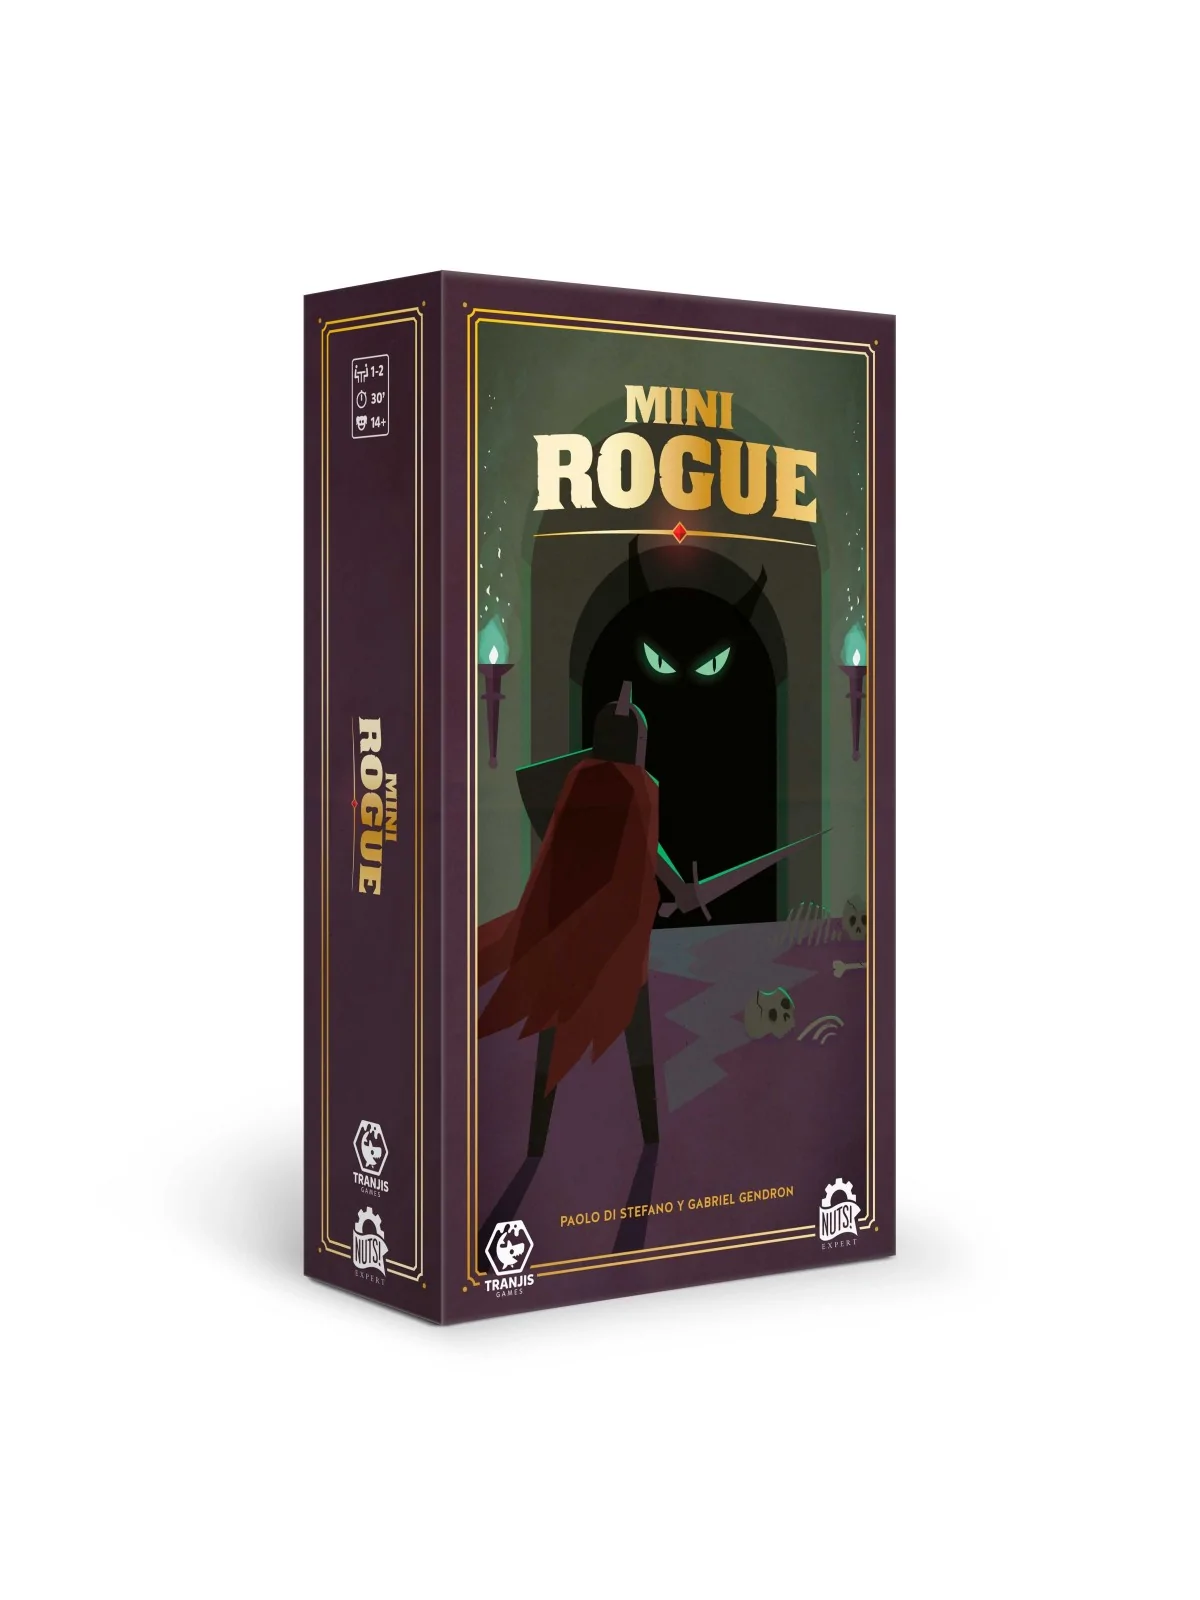 Comprar Mini Rogue barato al mejor precio 20,66 € de Tranjis Games